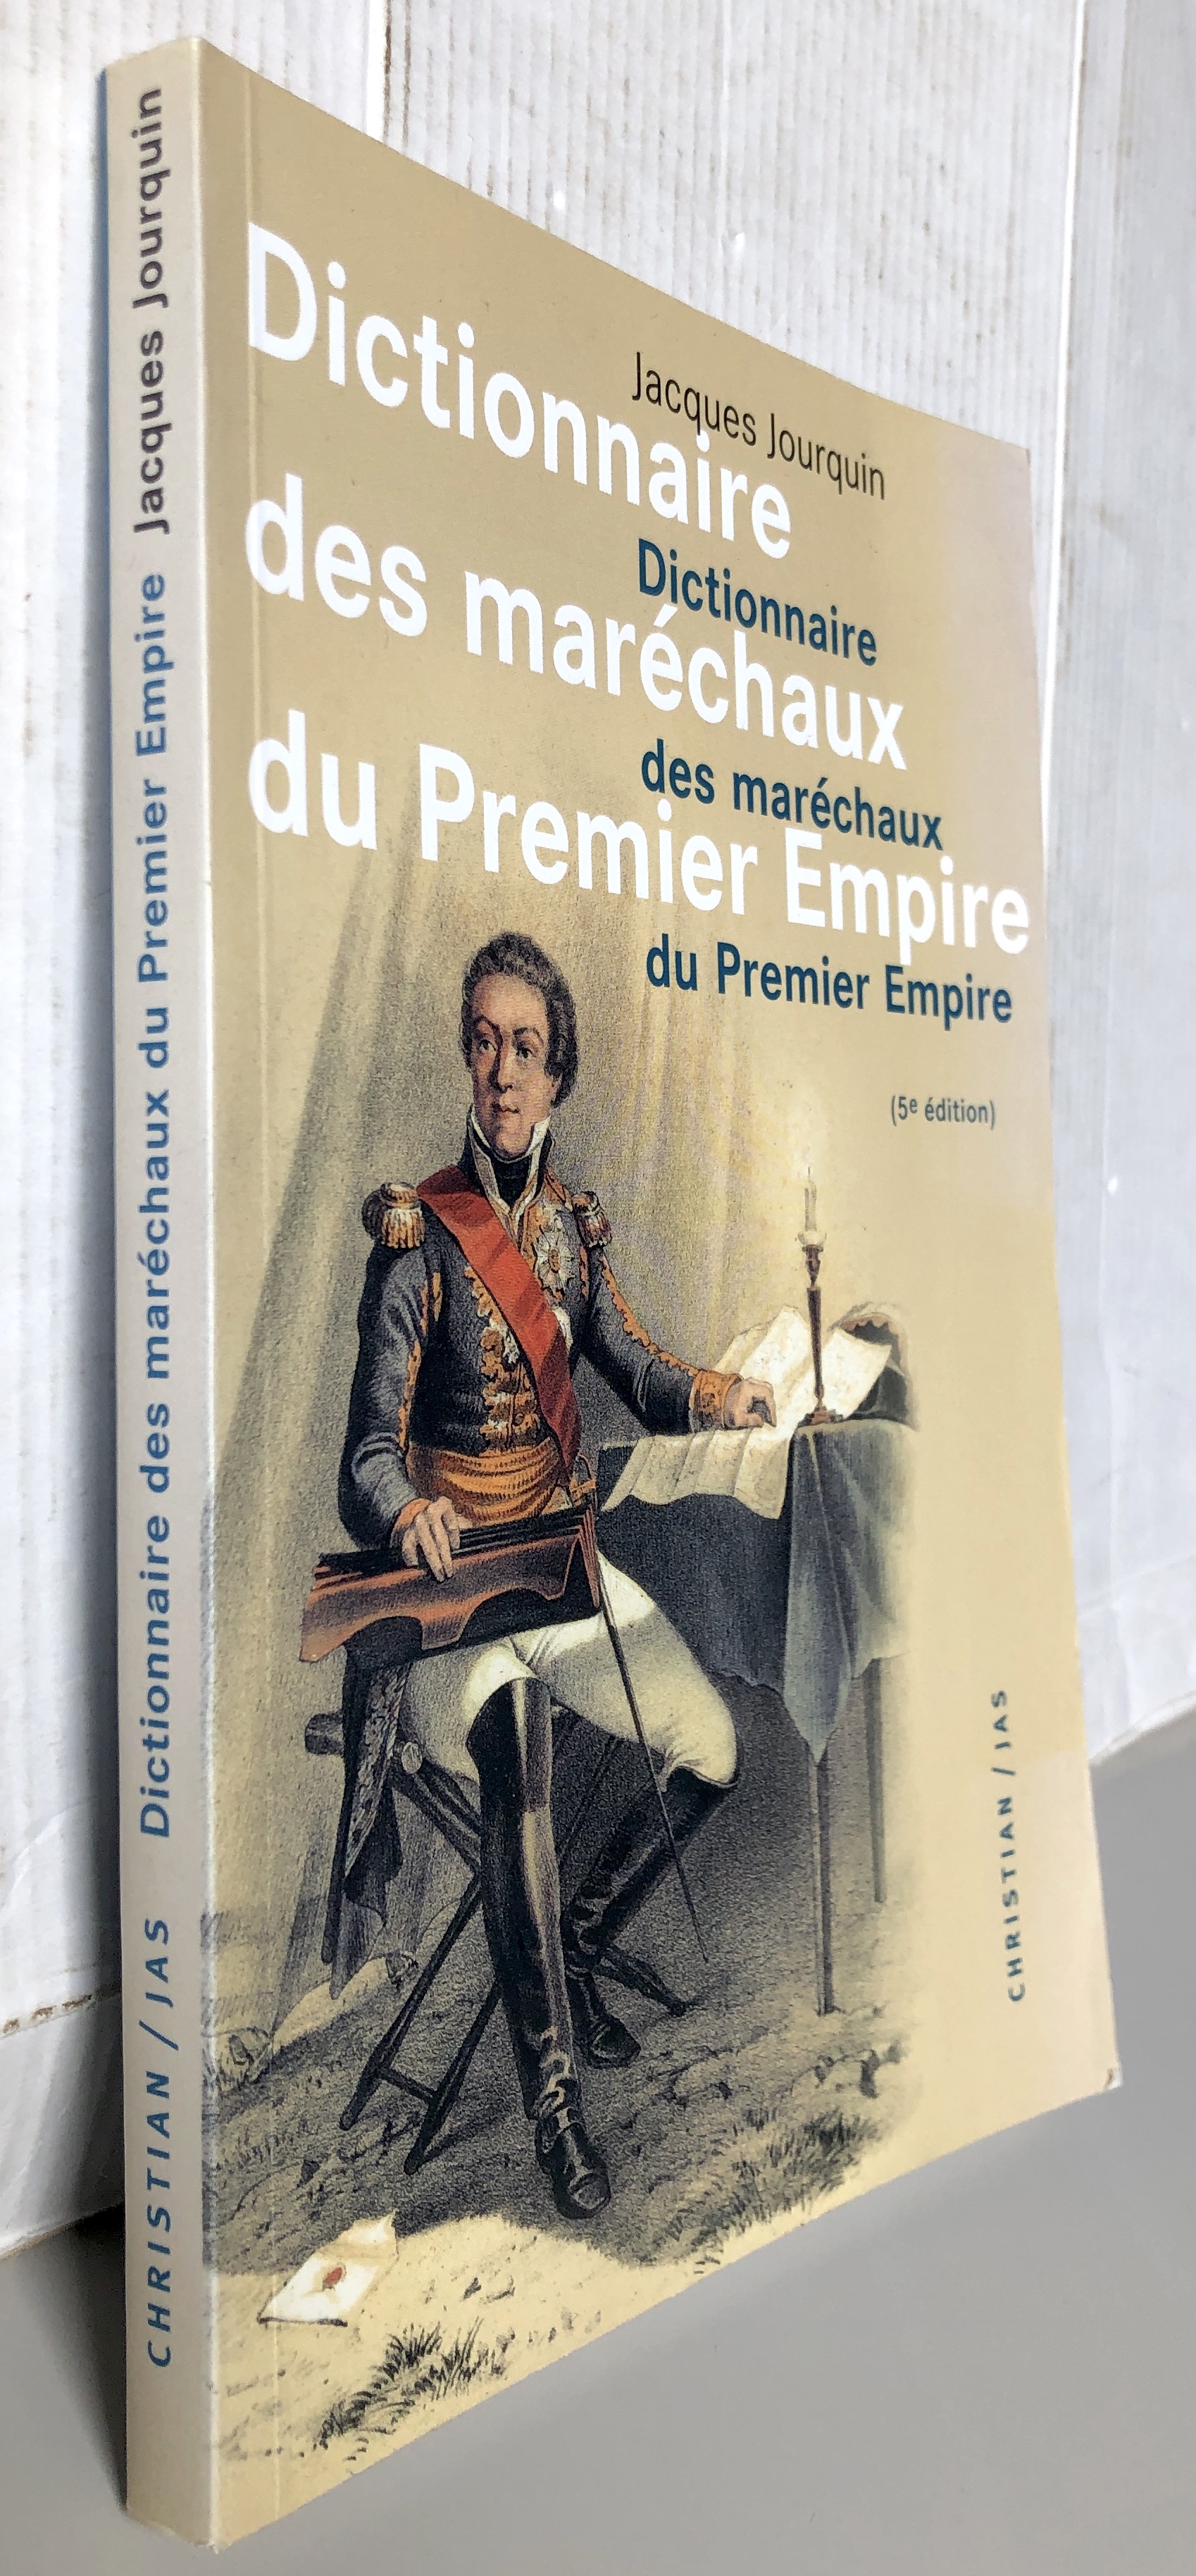 Dictionnaire des maréchaux du Premier Empire Dictionnaire analytique, statistique et comparé des vingt-six maréchaux, 5ème édition - Jourquin Jacques